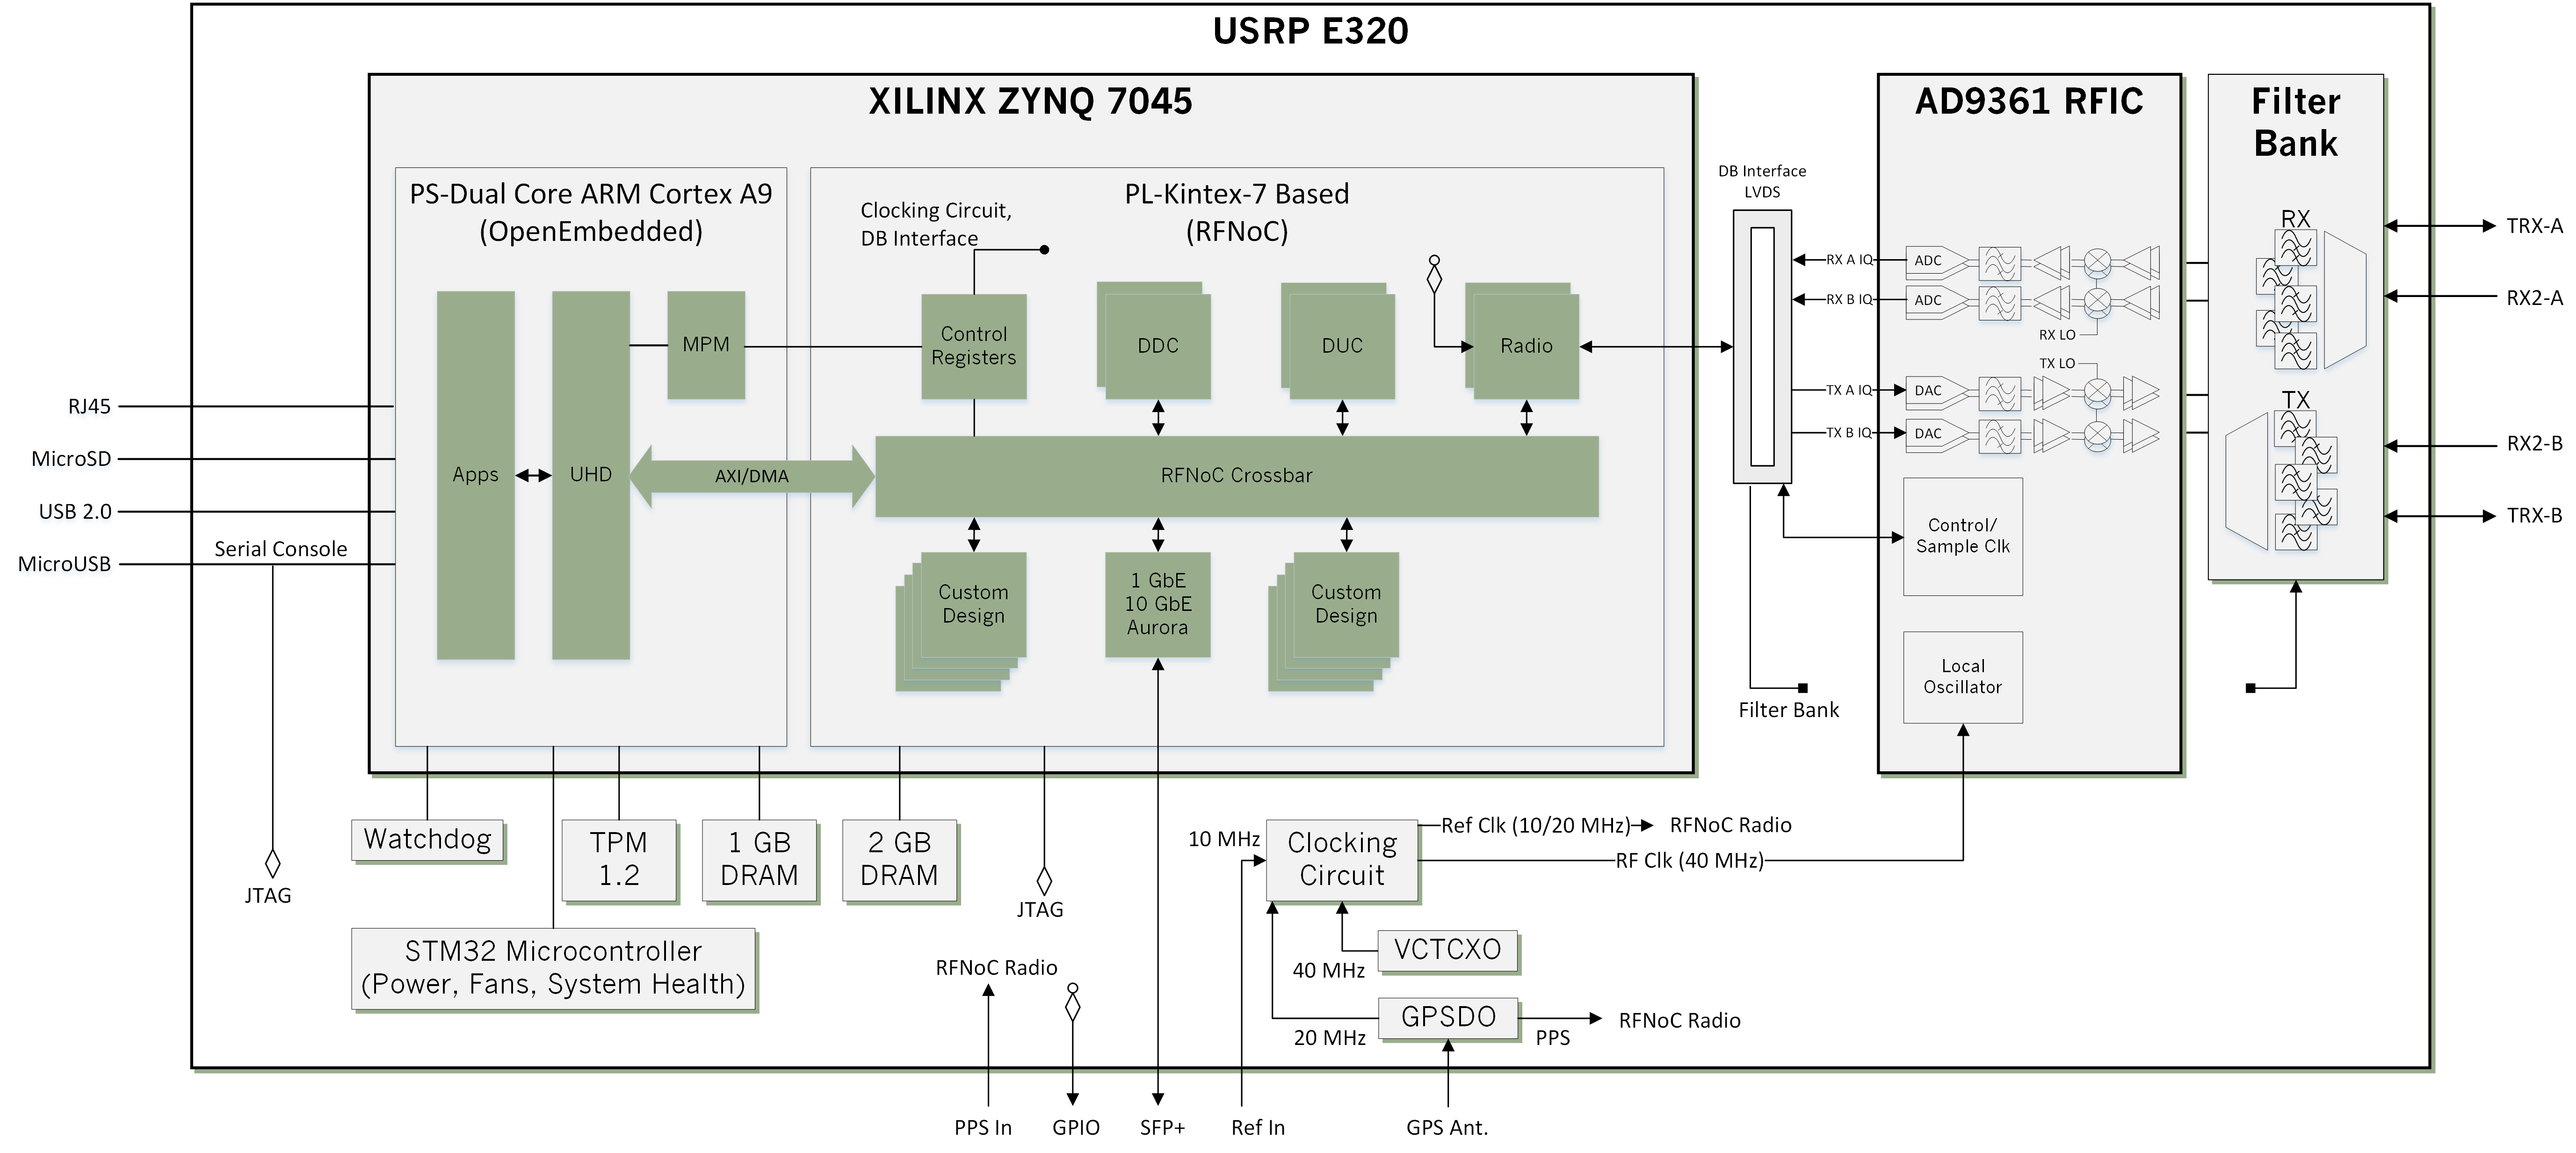 USRP E320 Block Diagram